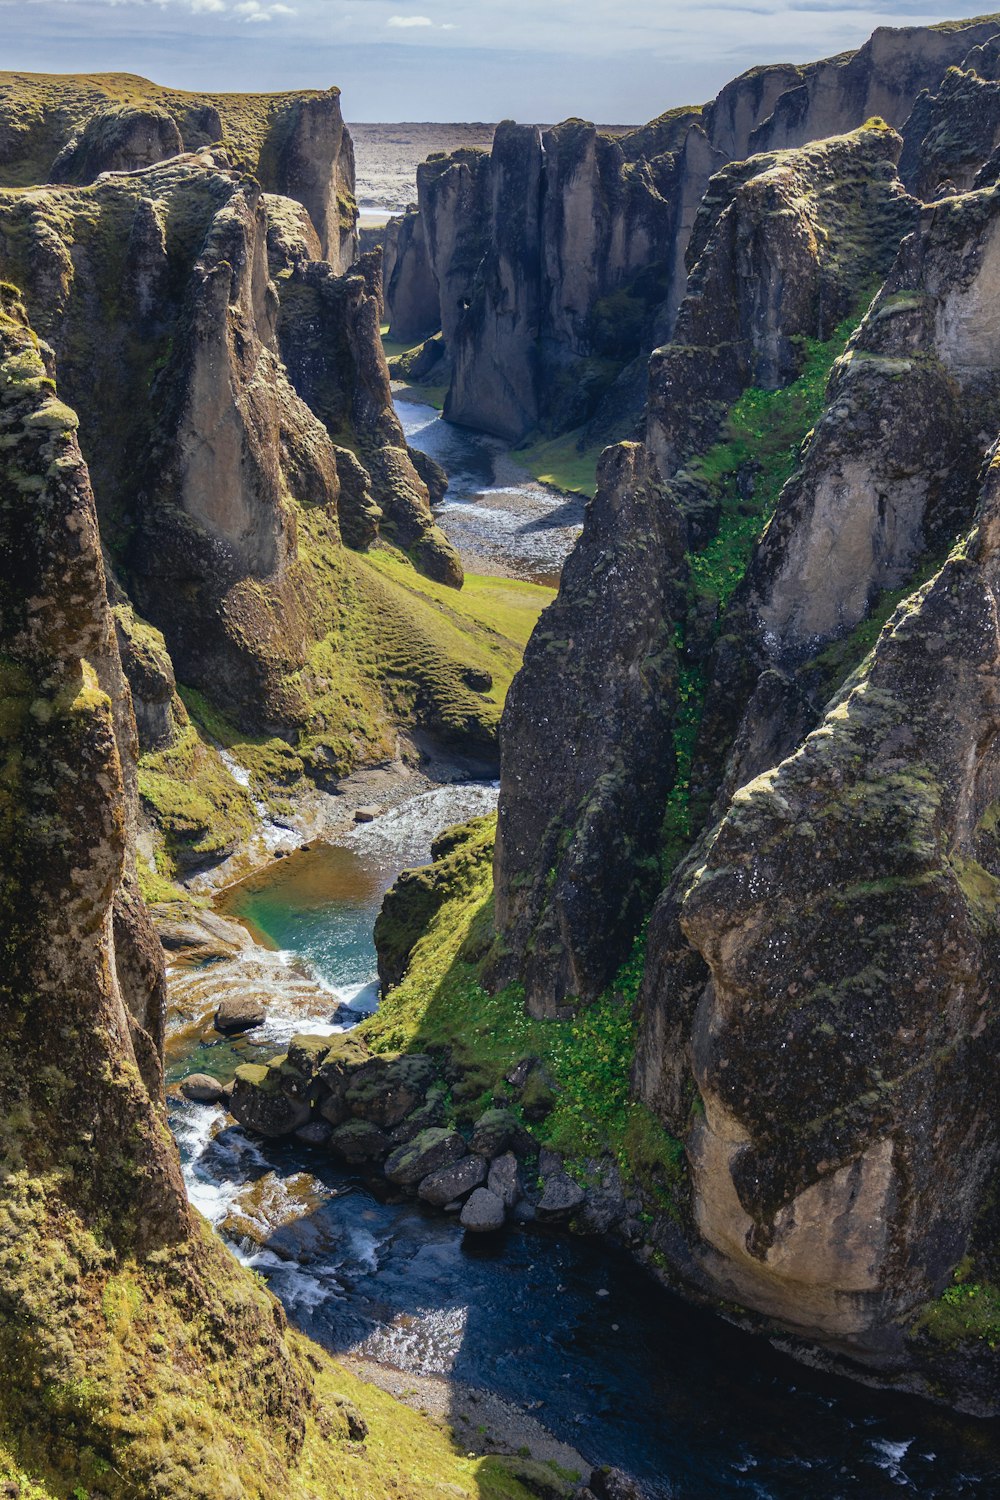 a river running between rocky cliffs